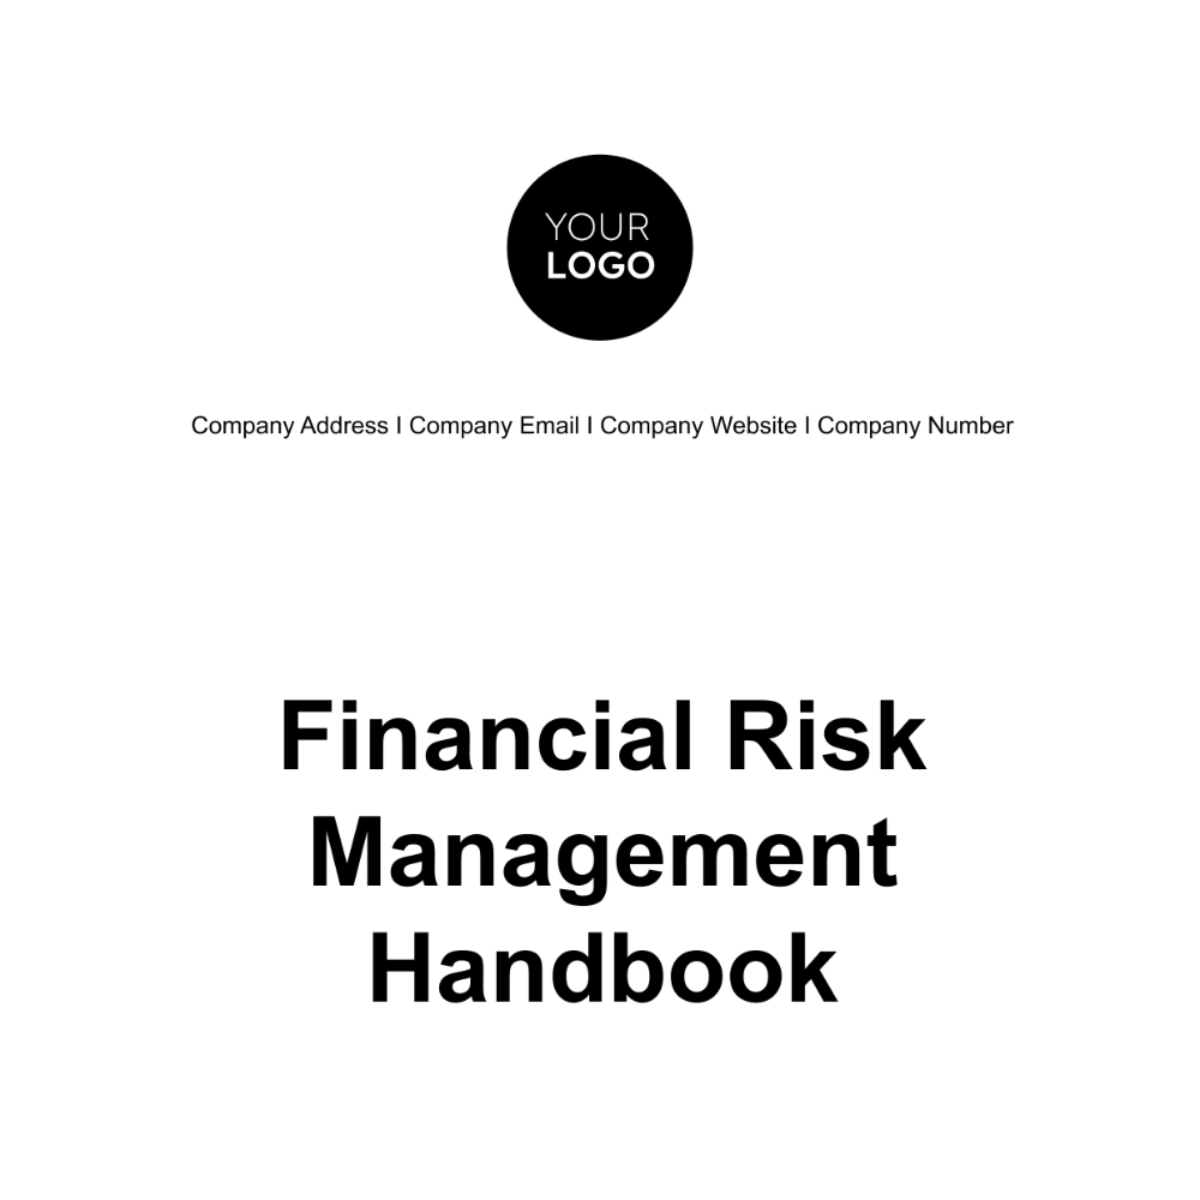 Financial Risk Management Handbook Template